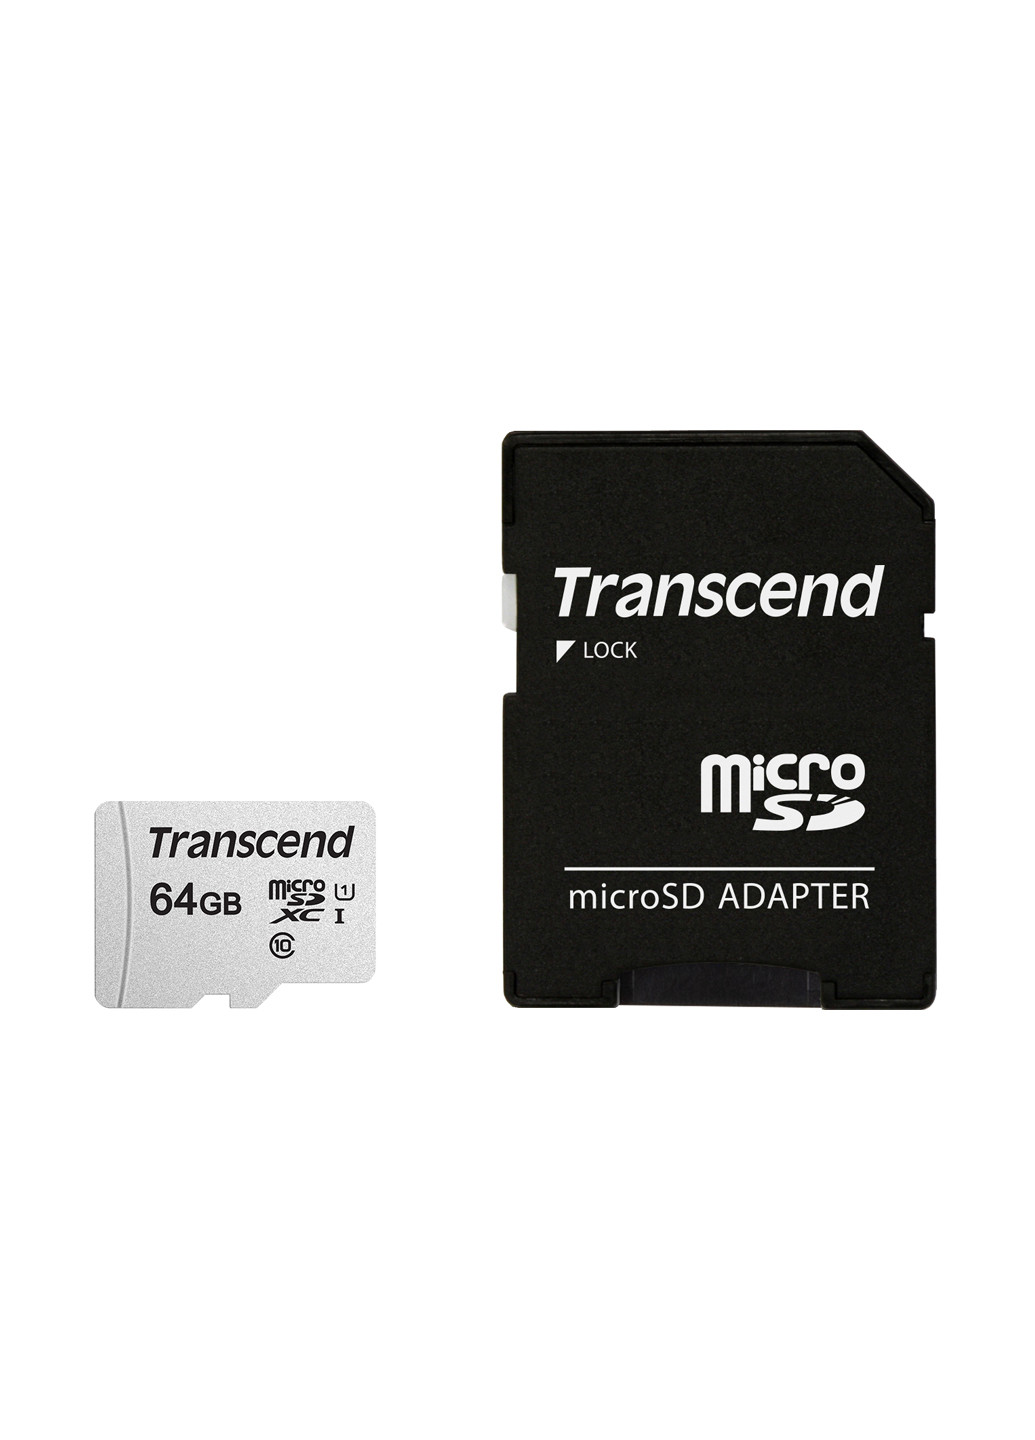 Карта пам'яті microSDXC 64GB C10 UHS-I (R95 / W45MB / s) + SD-adapter (TS64GUSD300S-A) Transcend карта памяти transcend microsdxc 64gb c10 uhs-i (r95/w45mb/s) + sd-adapter (ts64gusd300s-a) (135316898)